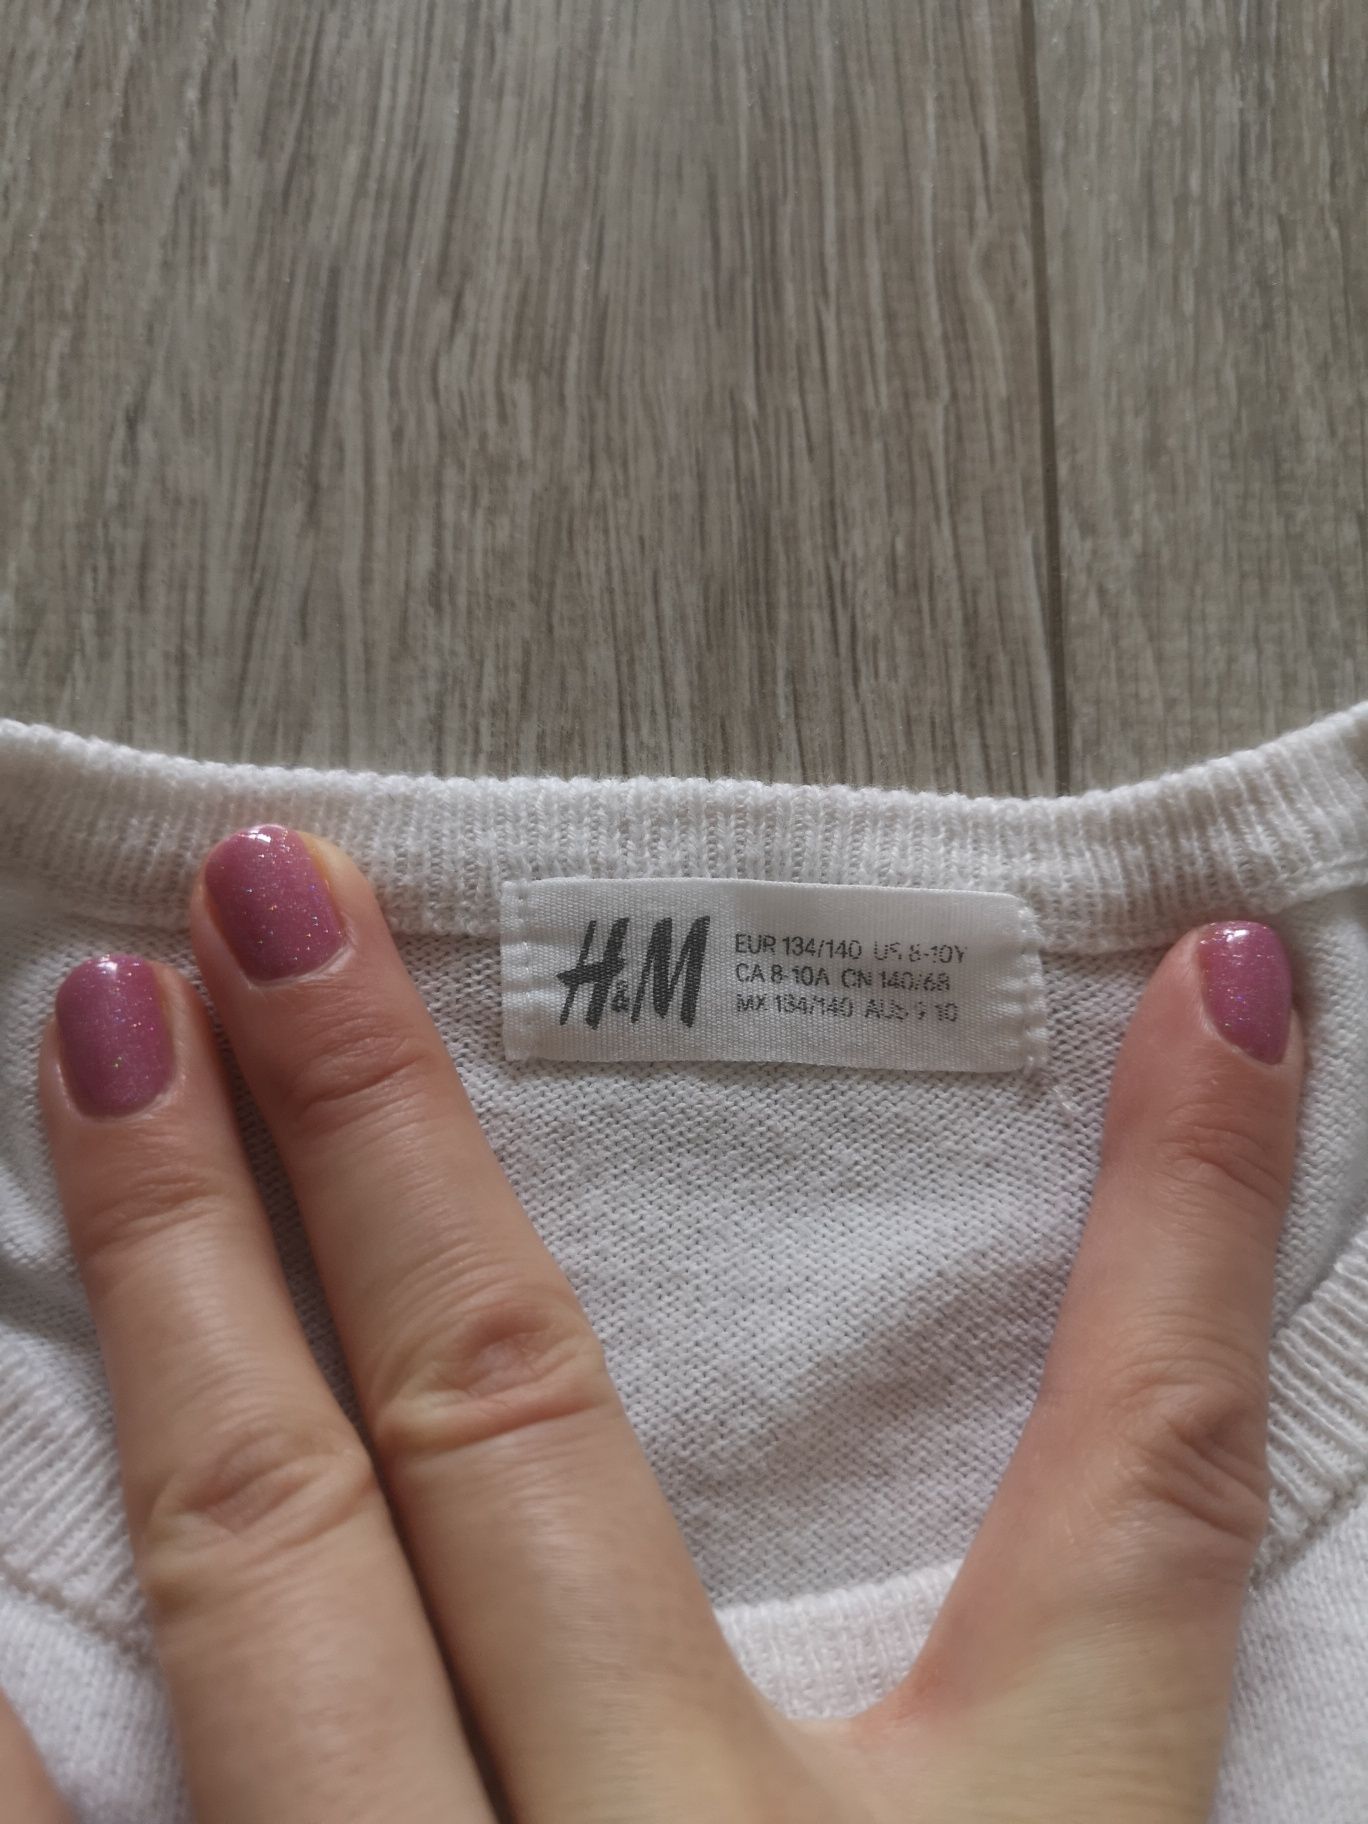 Bluzka h&m 134 140 długi rękaw jak nowa idealny cekiny serce sweterek